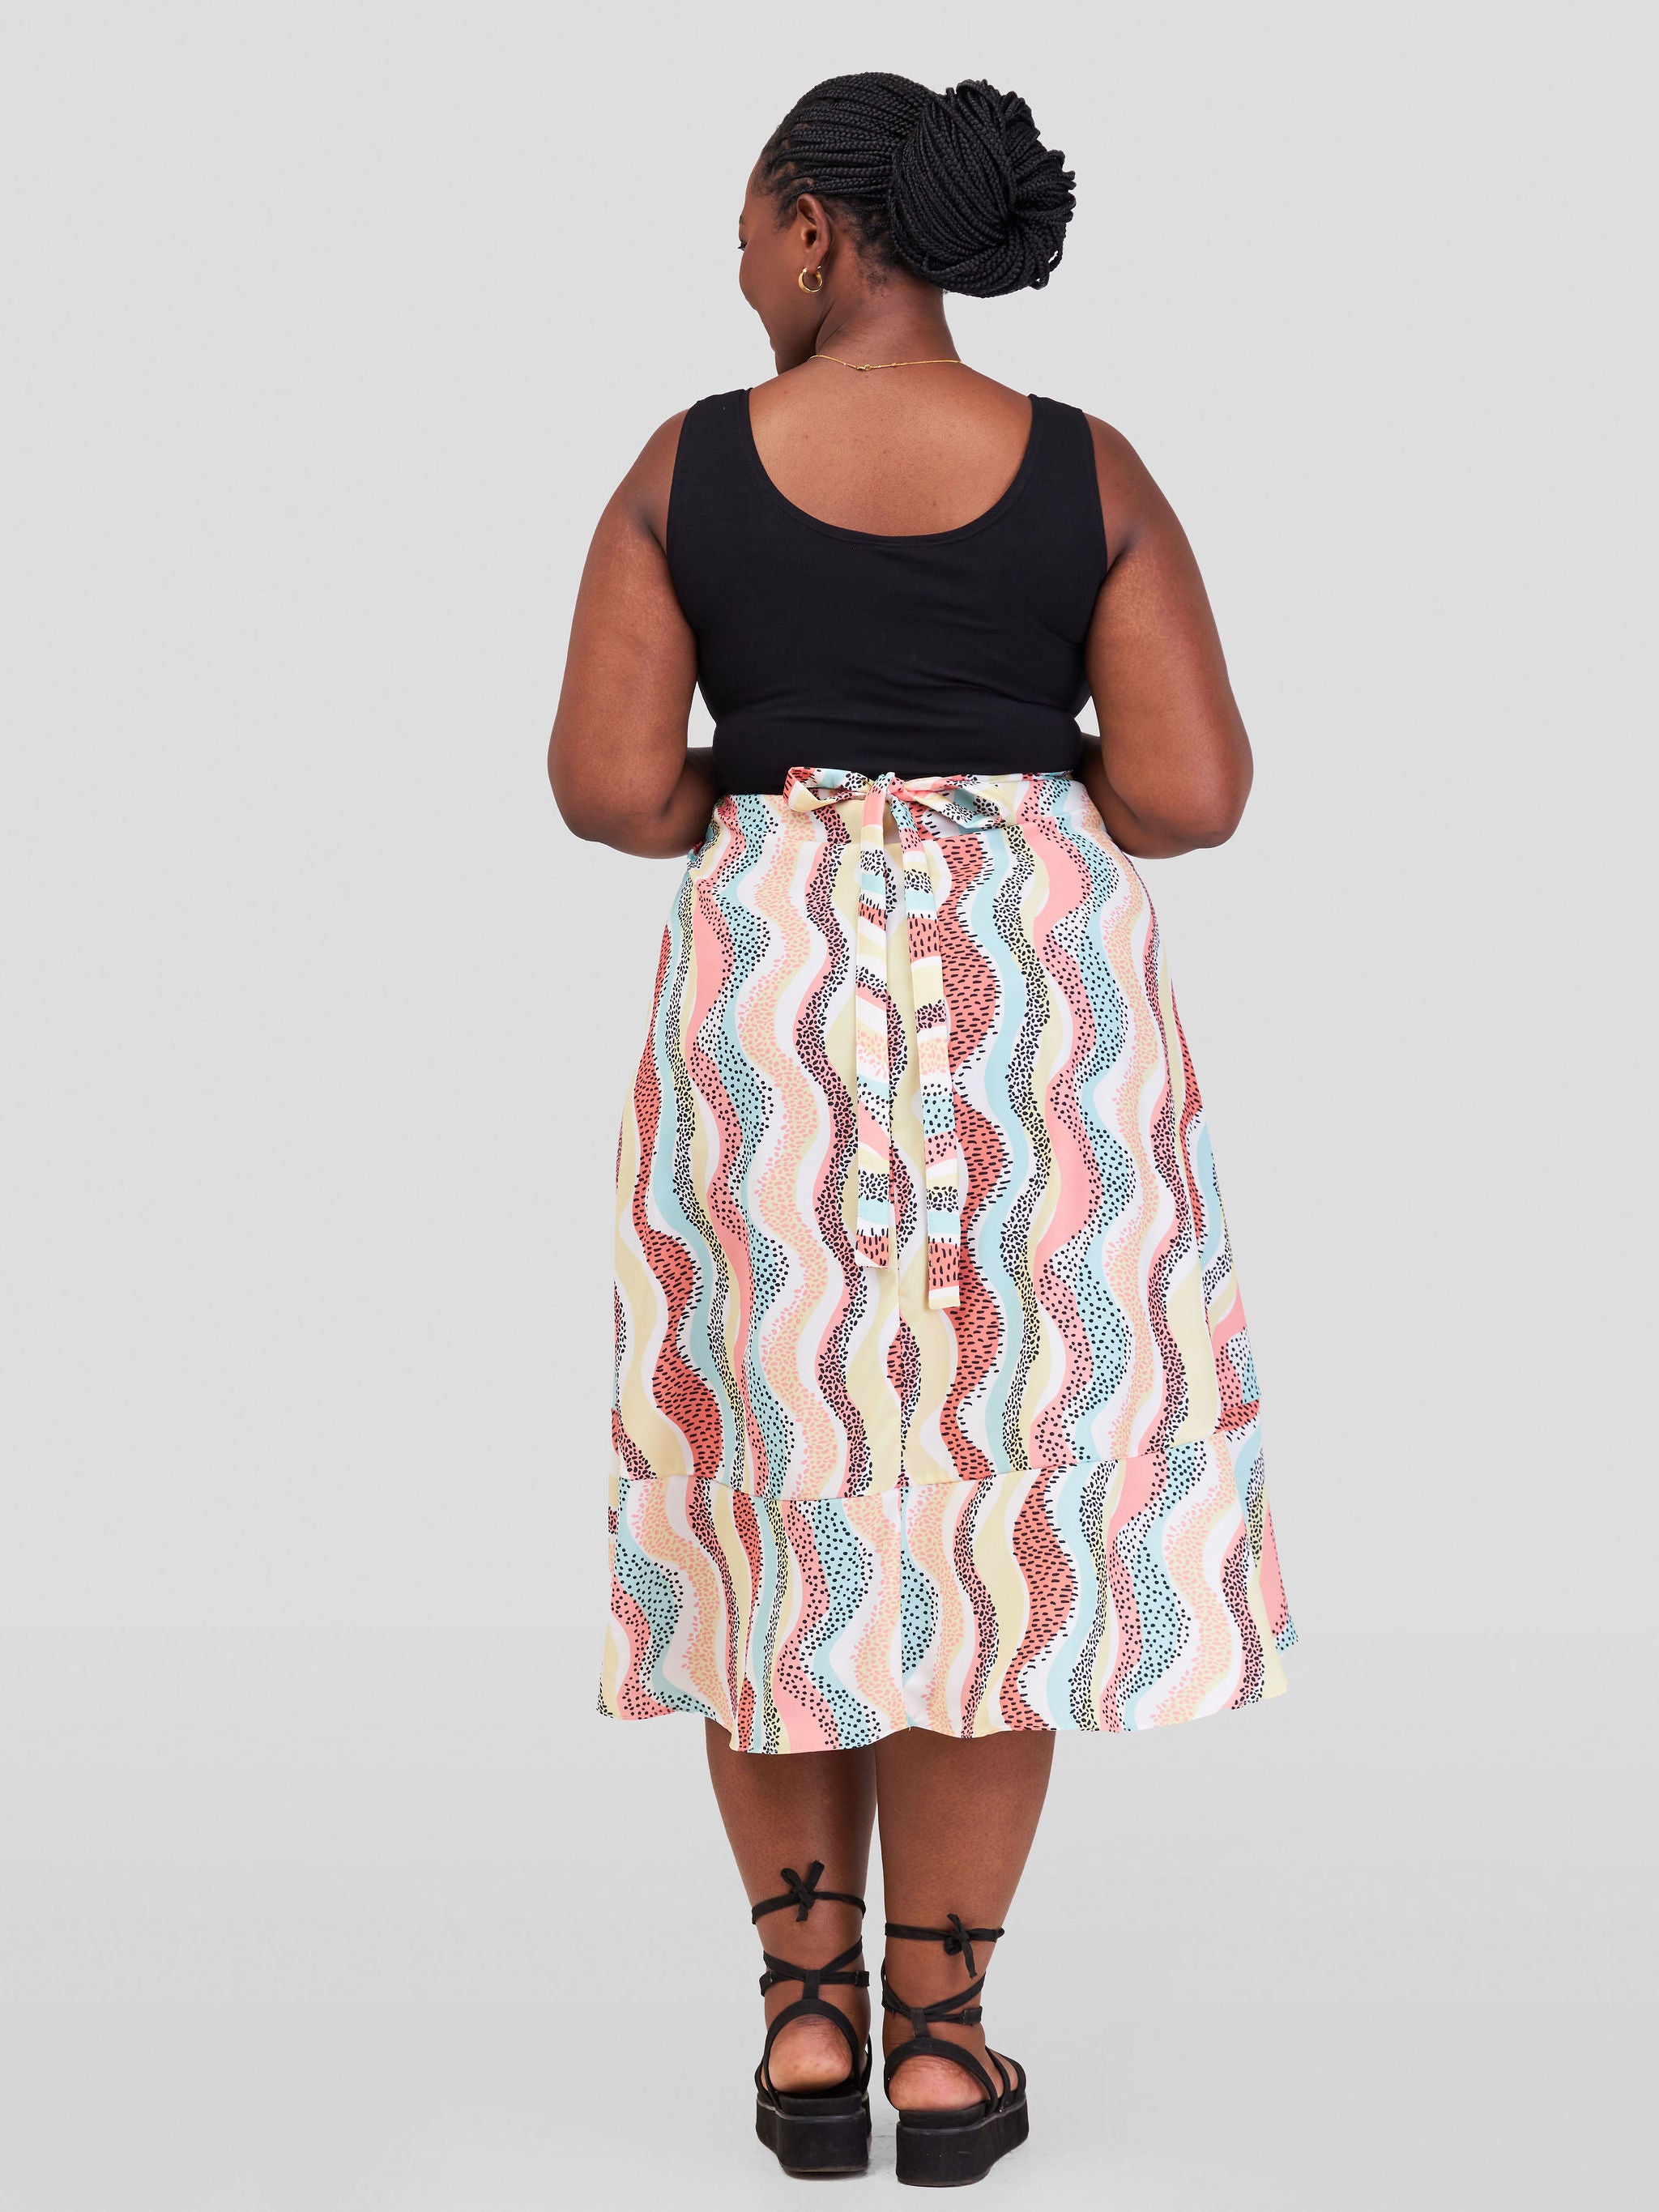 Vivo Malindi Flounce Wrap Skirt - Pink / Yellow Abstract Print